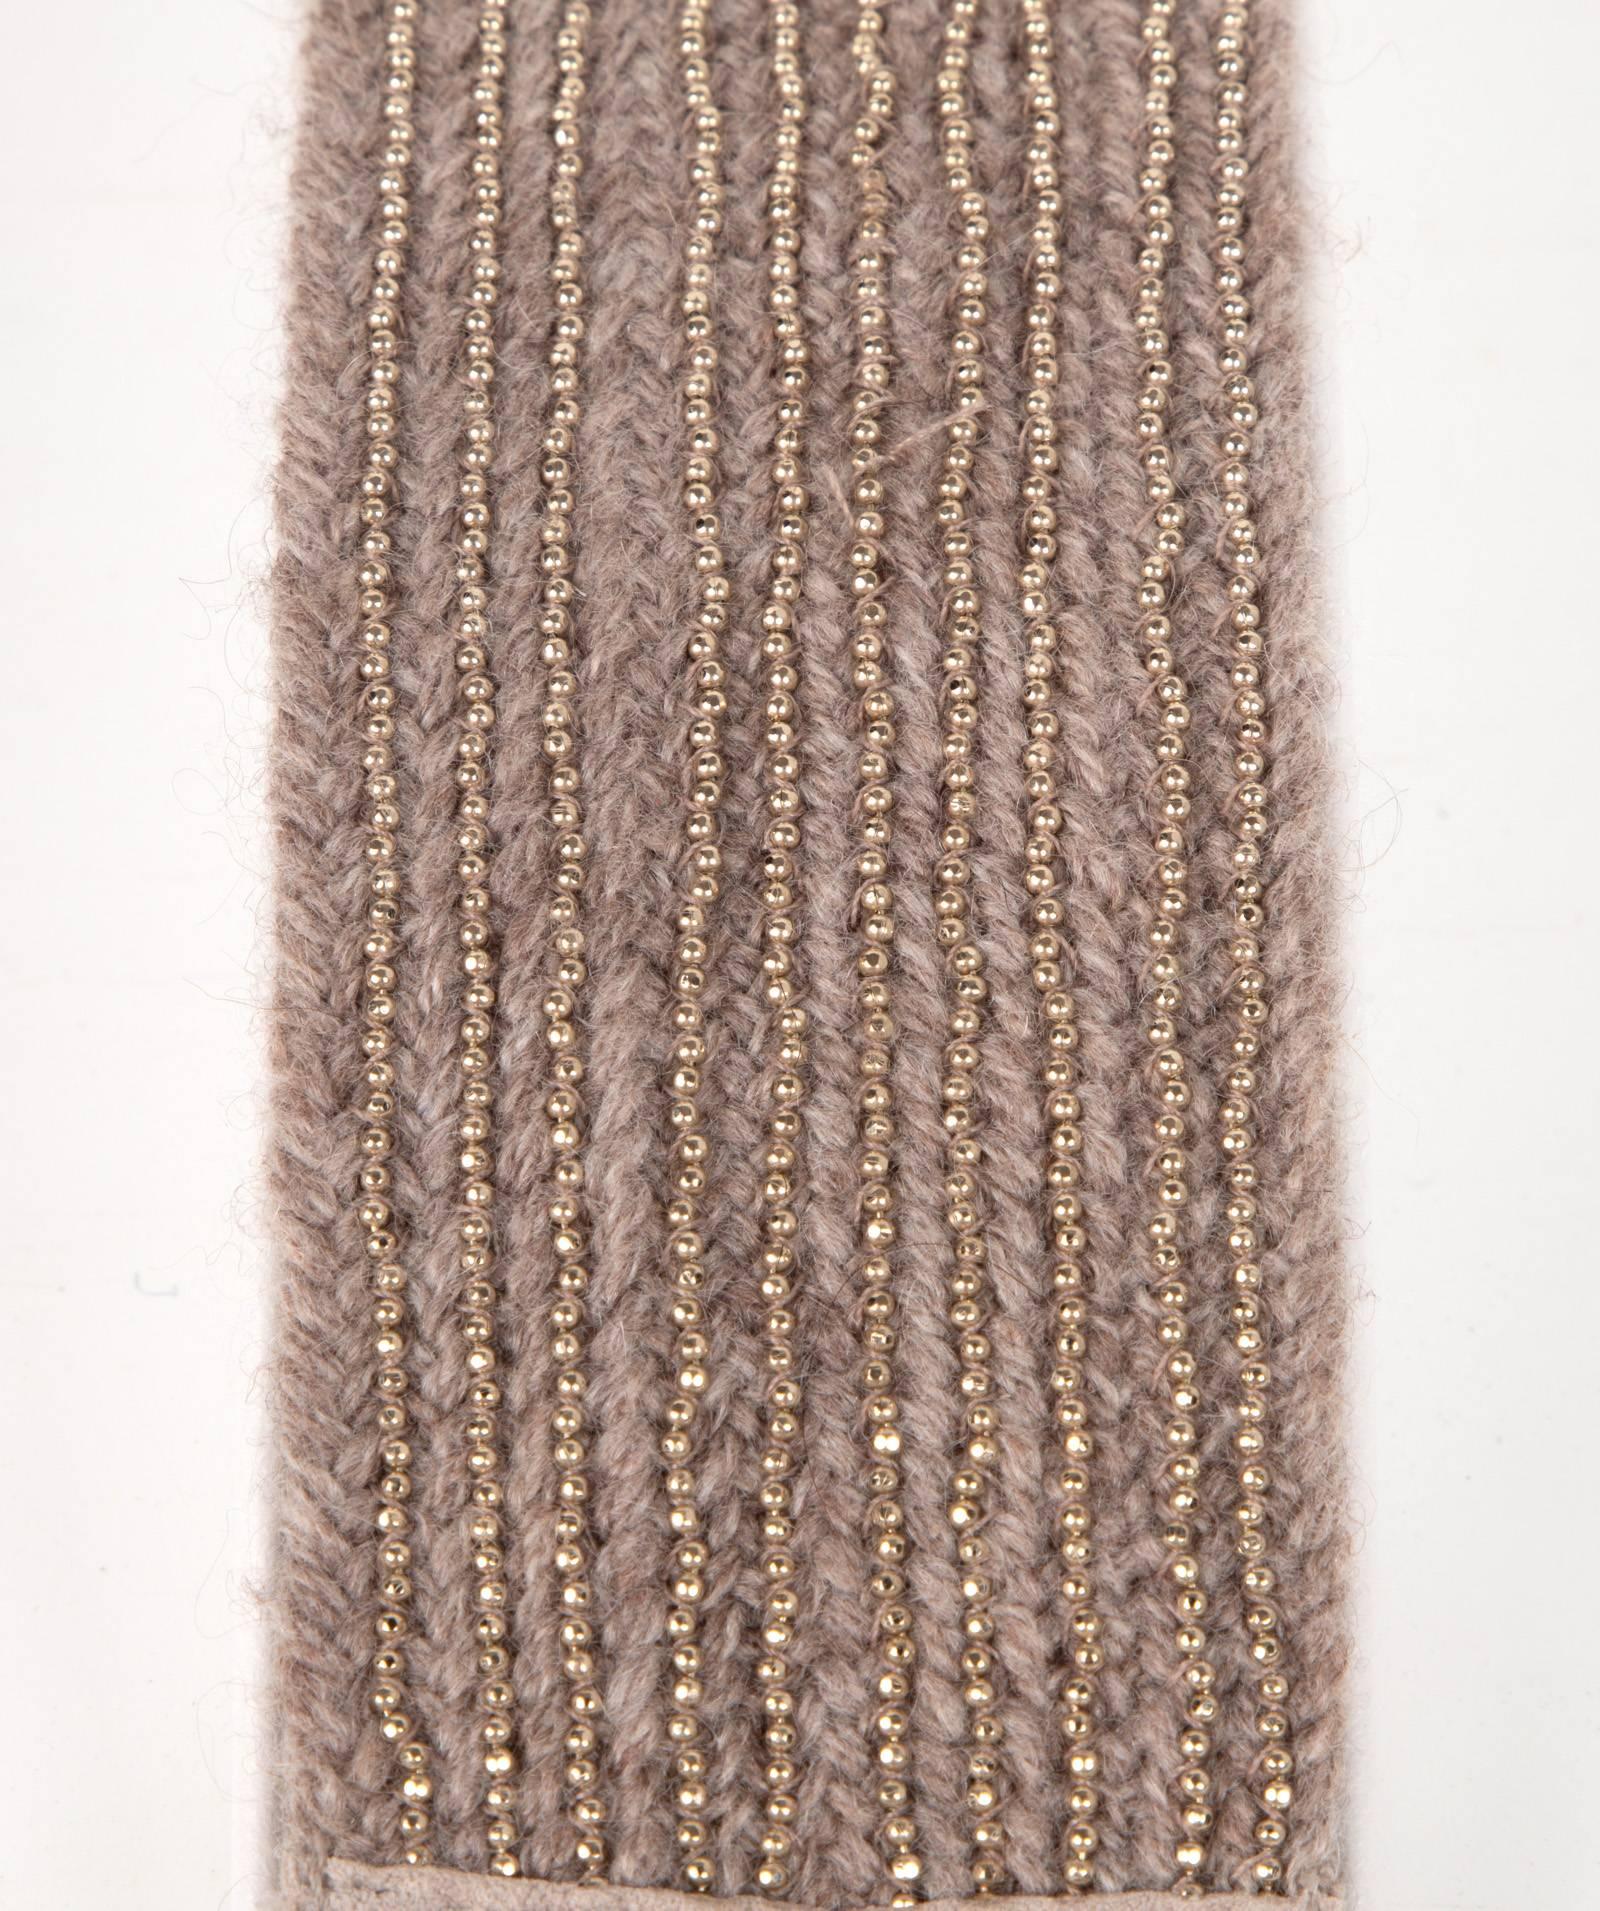 Brunello Cucinelli propose un bracelet manchette à nouer en douceur, dans une matière qui ressemble à du cachemire.
Orné de 10 rangs de perles Monili.
Les extrémités des liens sont en métal doré. 
Livré avec son emballage d'origine. 
NEW ou NEVER